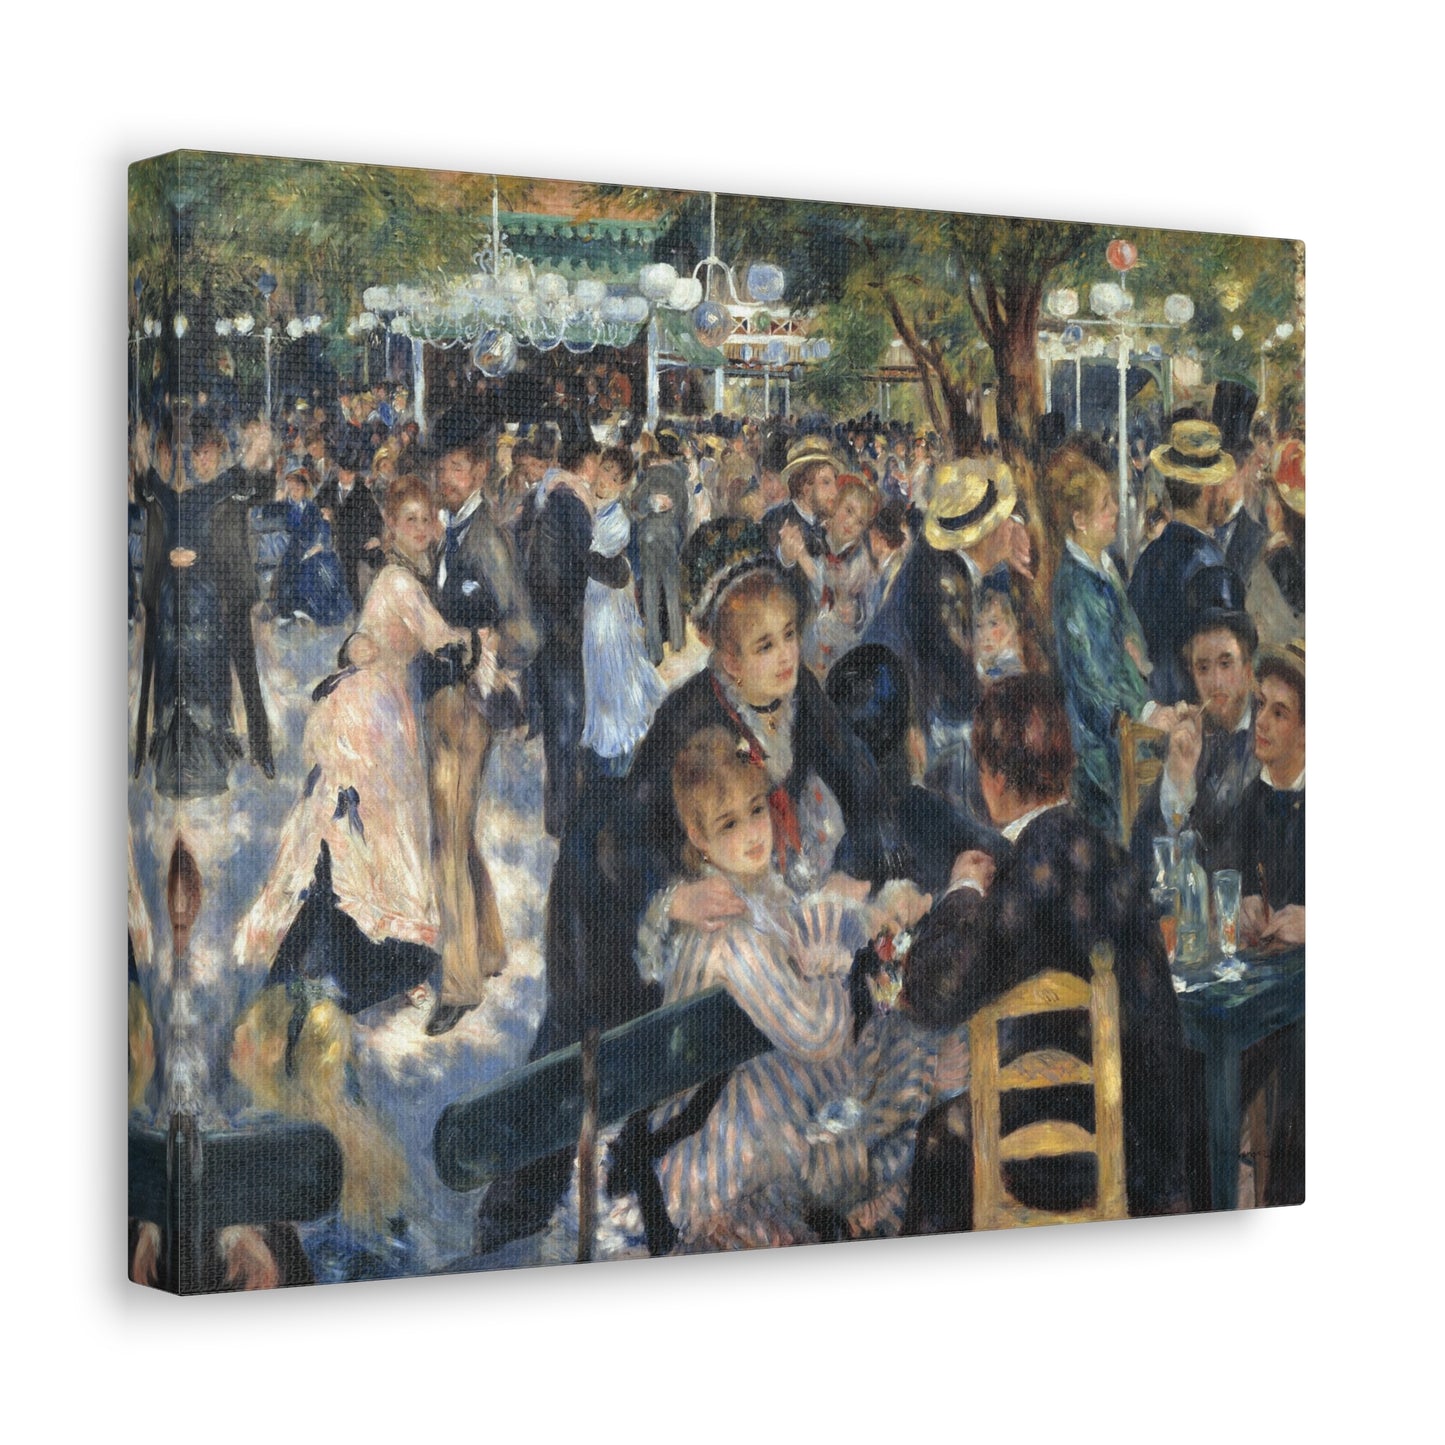 Dance at Le Moulin de la Galette by Pierre-Auguste Renoir - Canvas Print